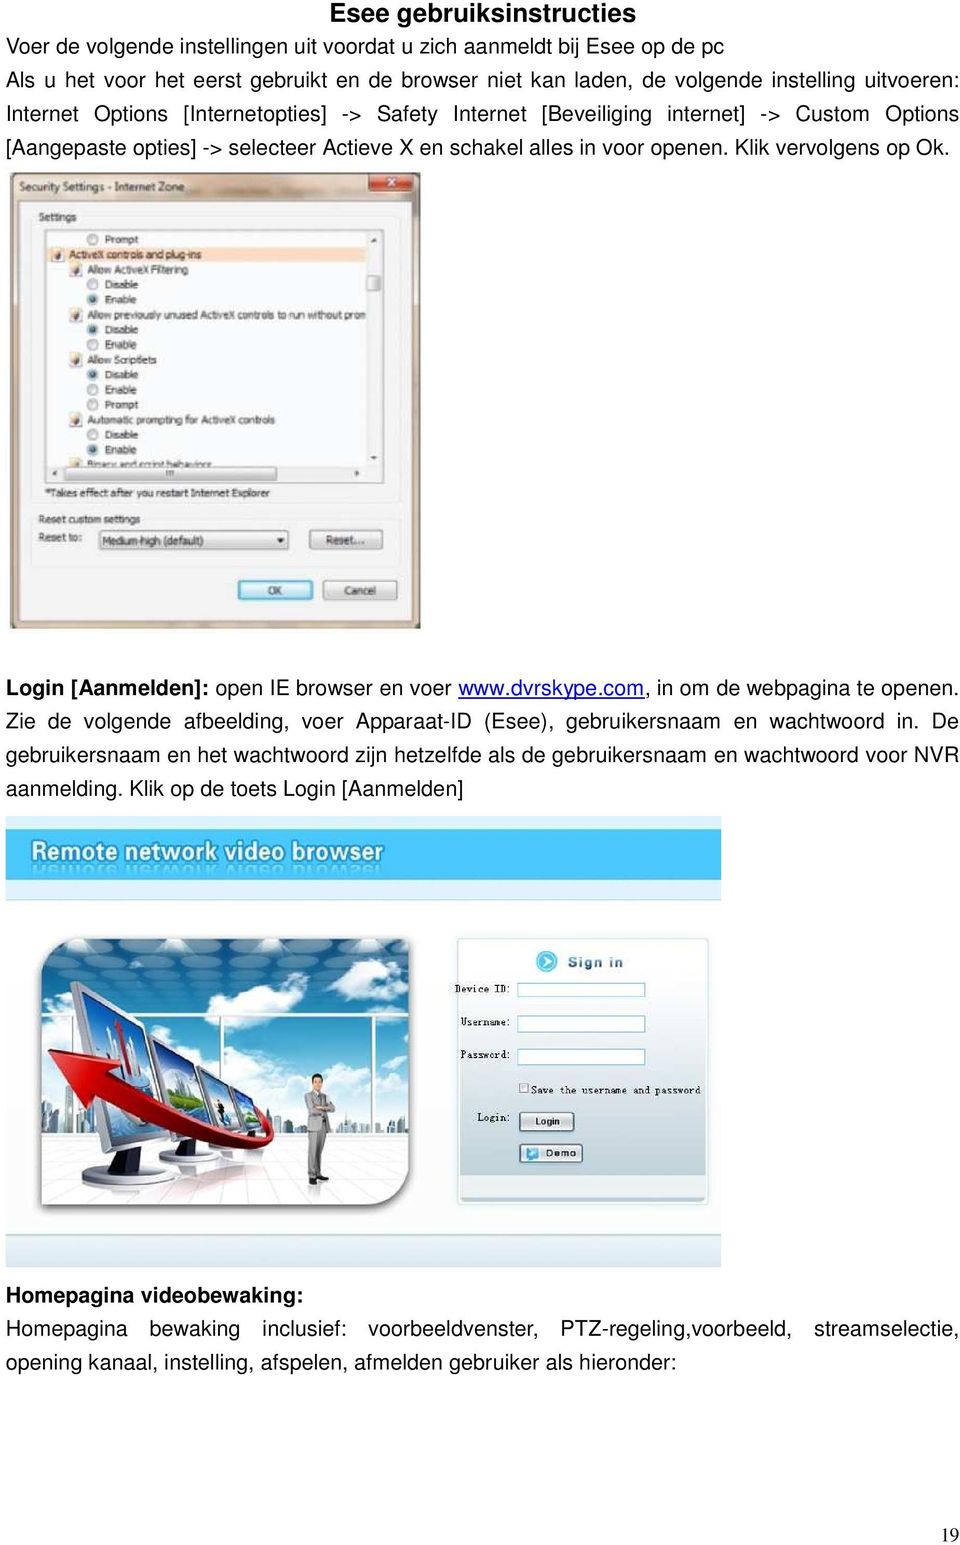 Login [Aanmelden]: open IE browser en voer www.dvrskype.com, in om de webpagina te openen. Zie de volgende afbeelding, voer Apparaat-ID (Esee), gebruikersnaam en wachtwoord in.